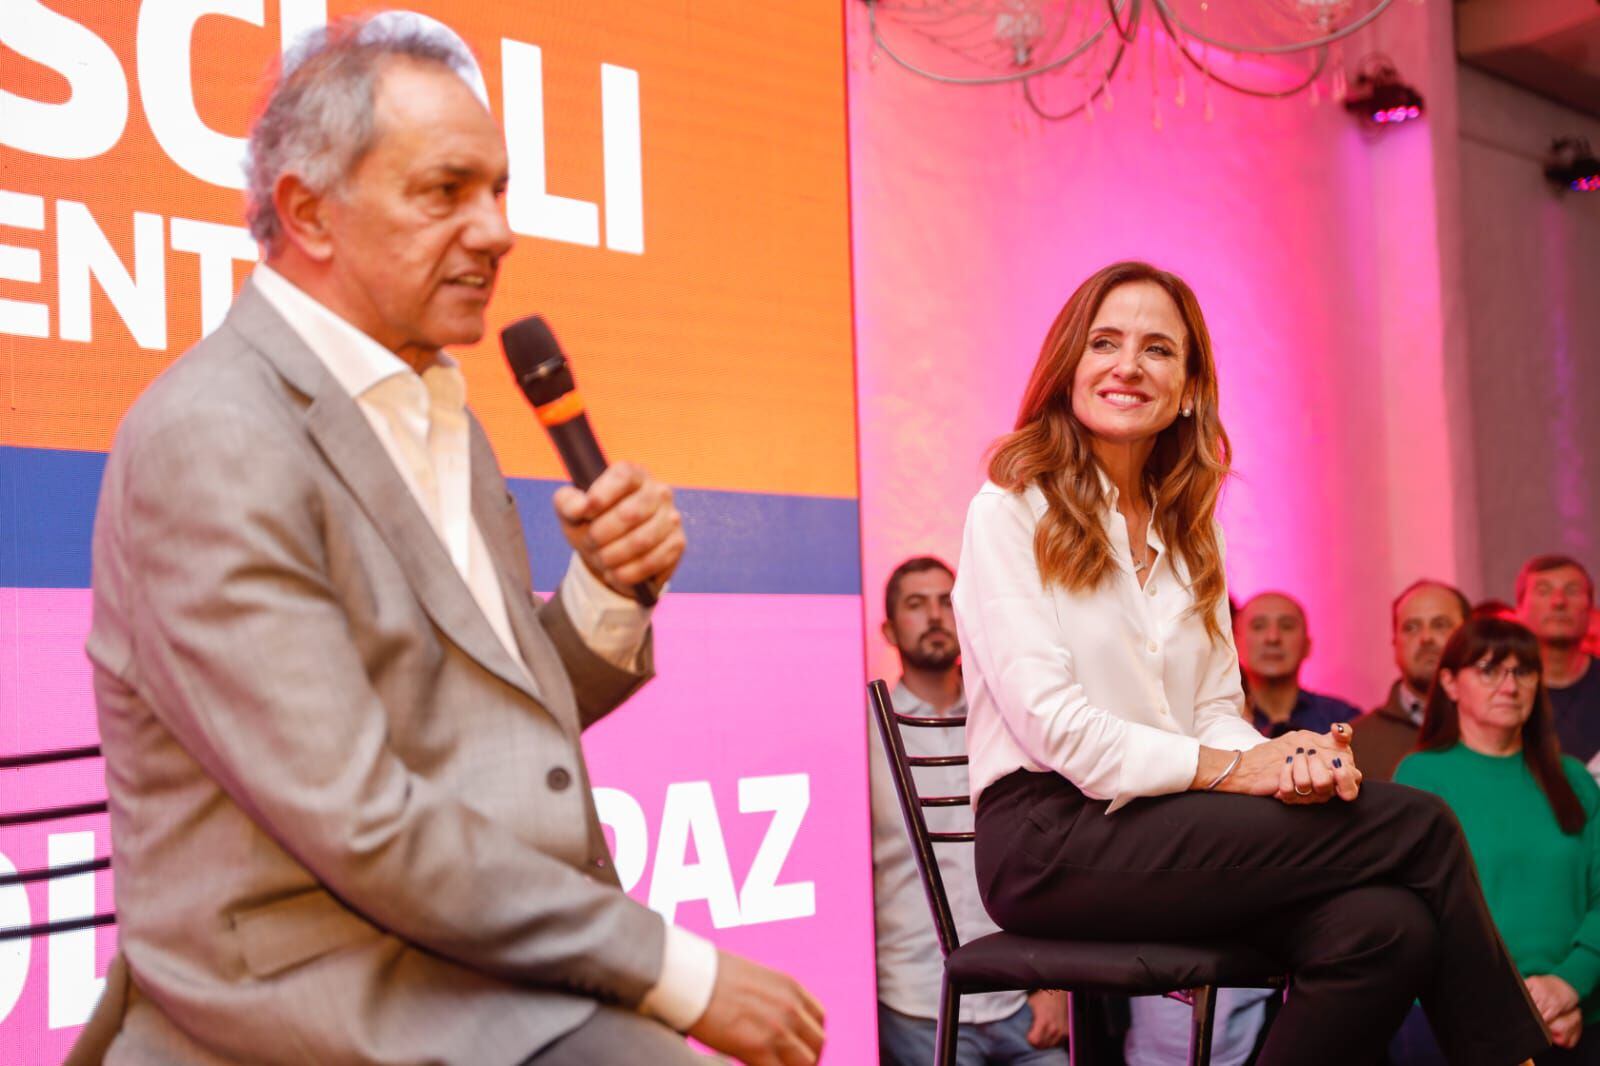 Daniel Scioli y Victoria Tolosa Paz, coincidieron en un acto en la provincia de Buenos Aires. Él busca su precandidatura a presidenta, en tanto que ella desea competir por la gobernación